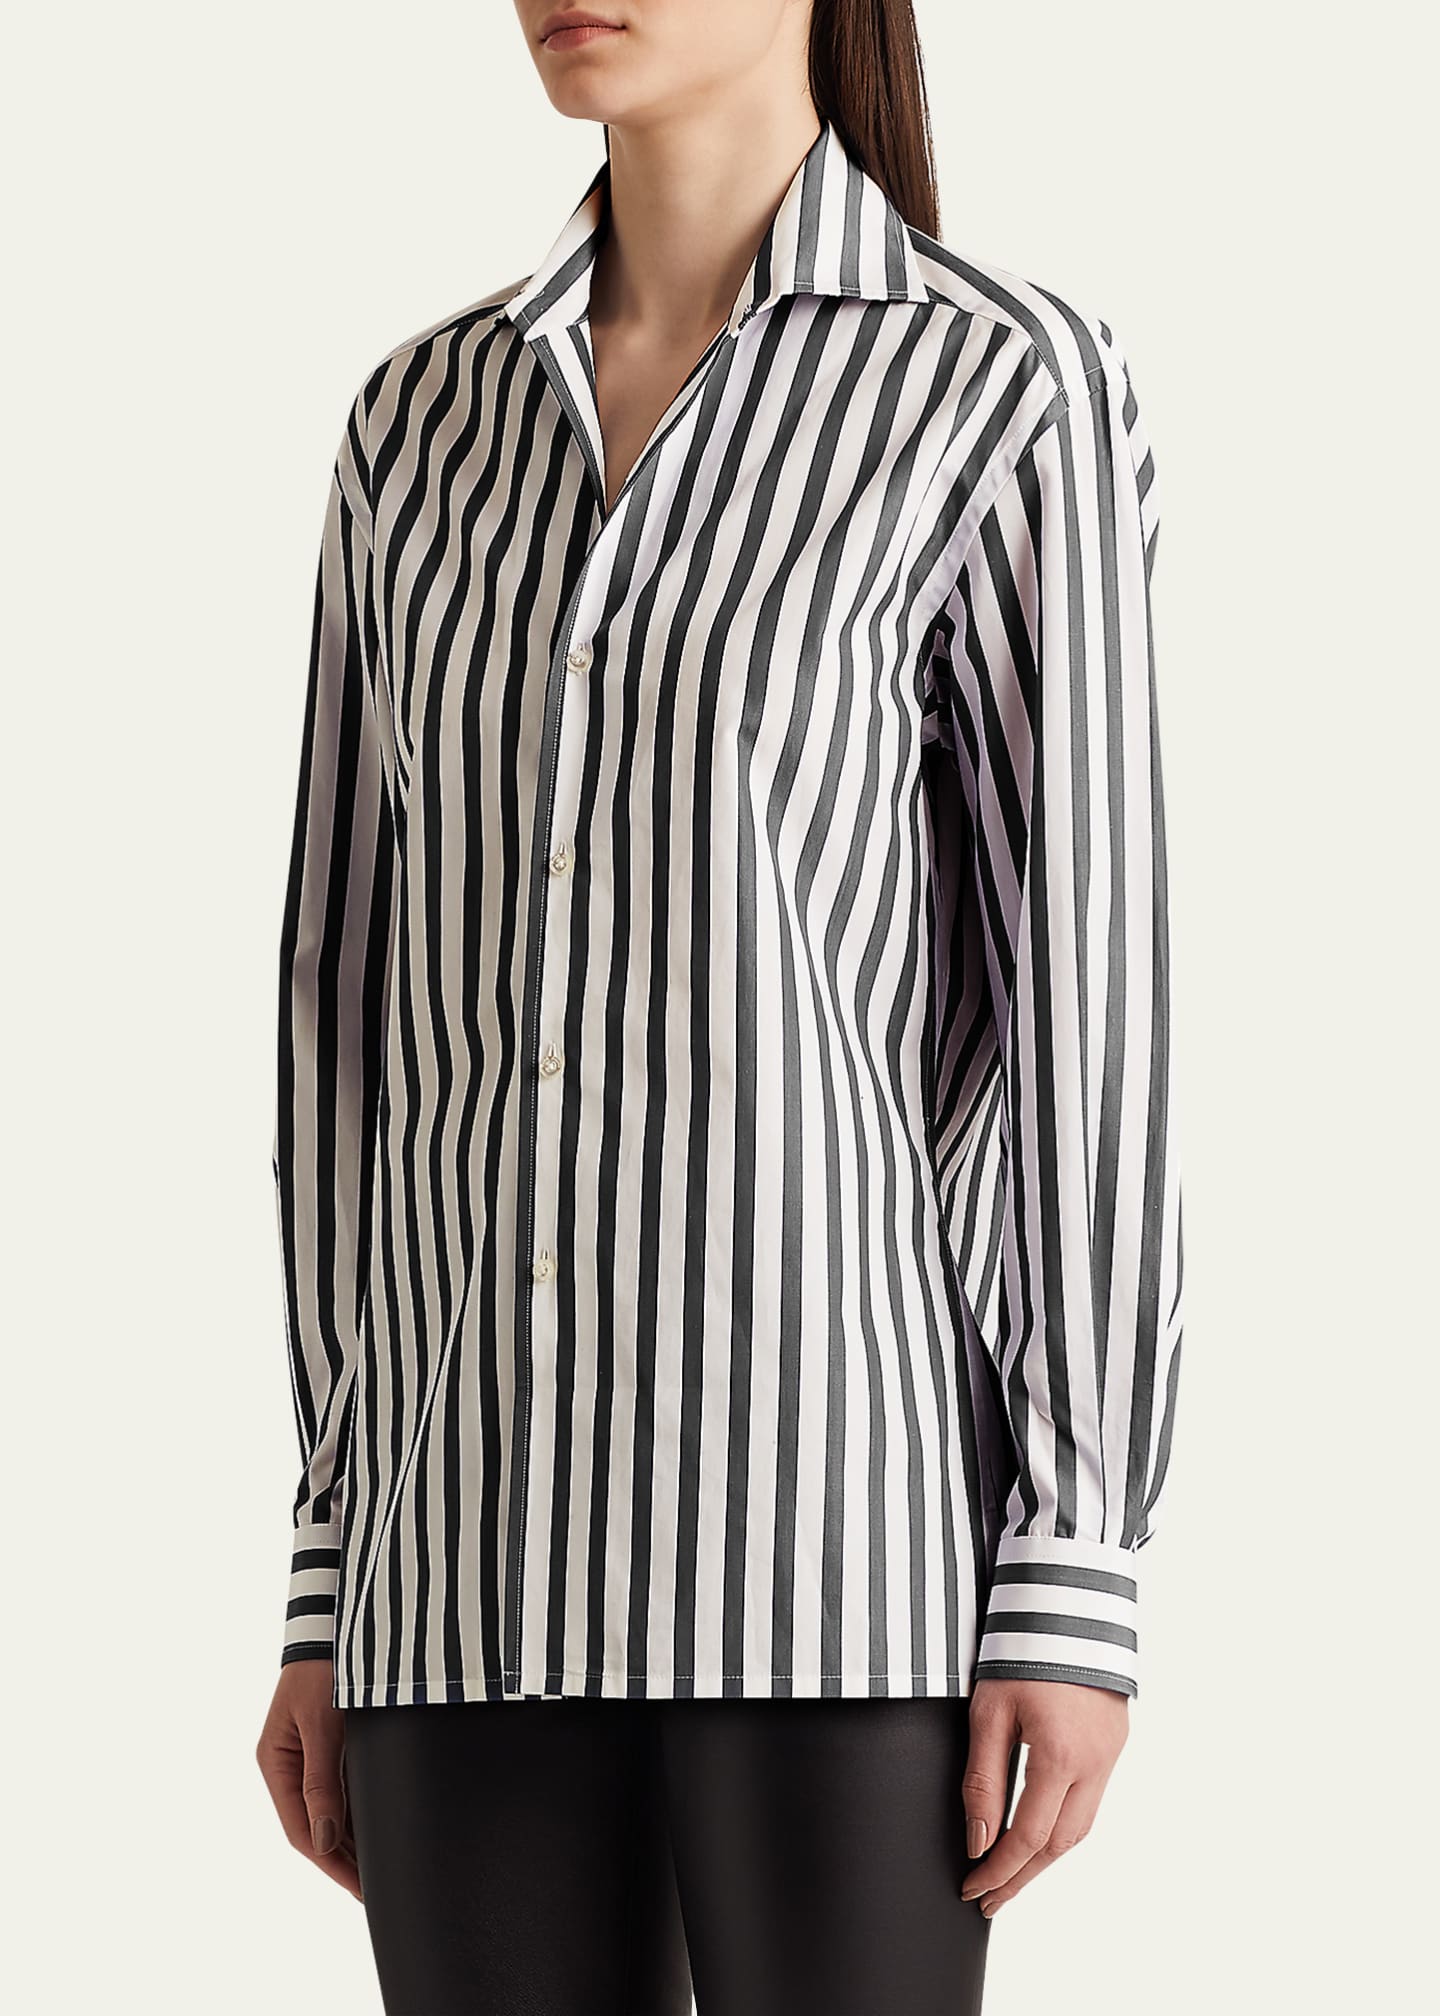 Ralph Lauren Collection Capri Stripe Button-Down Shirt - Bergdorf Goodman